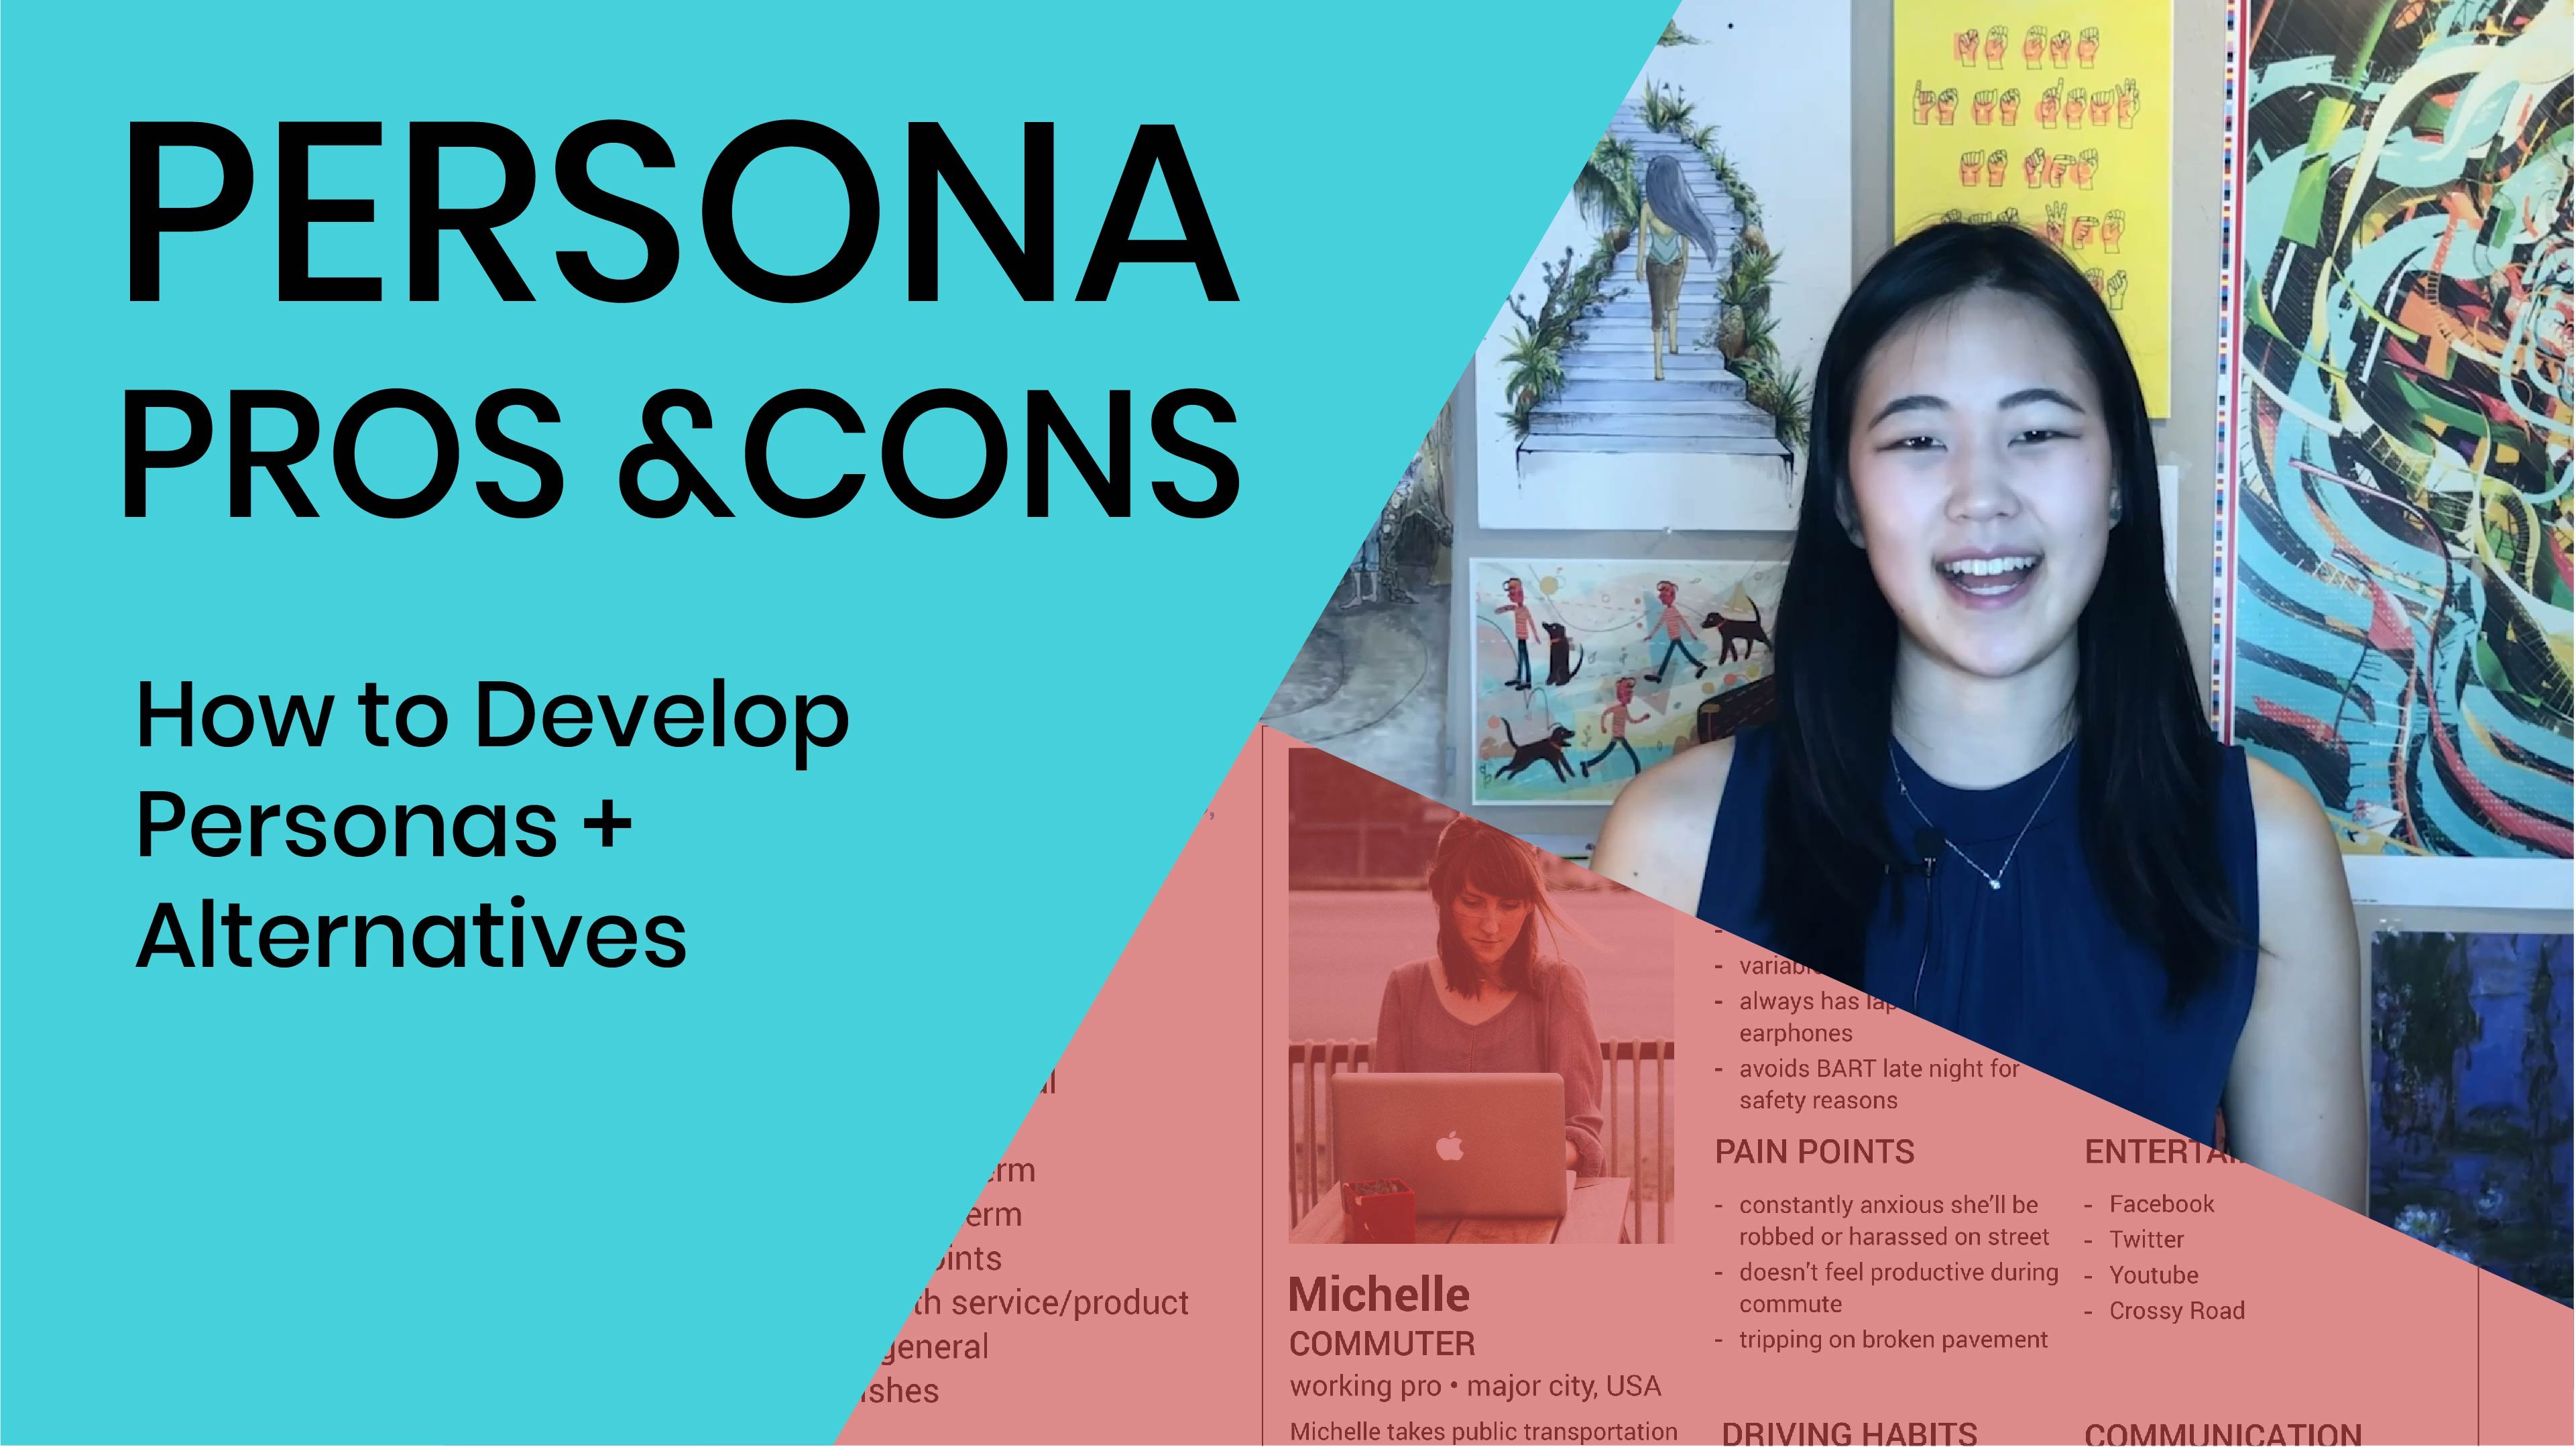 آموزش مزایا و معایب Persona: چگونه Personas + Alternatives را توسعه دهیم